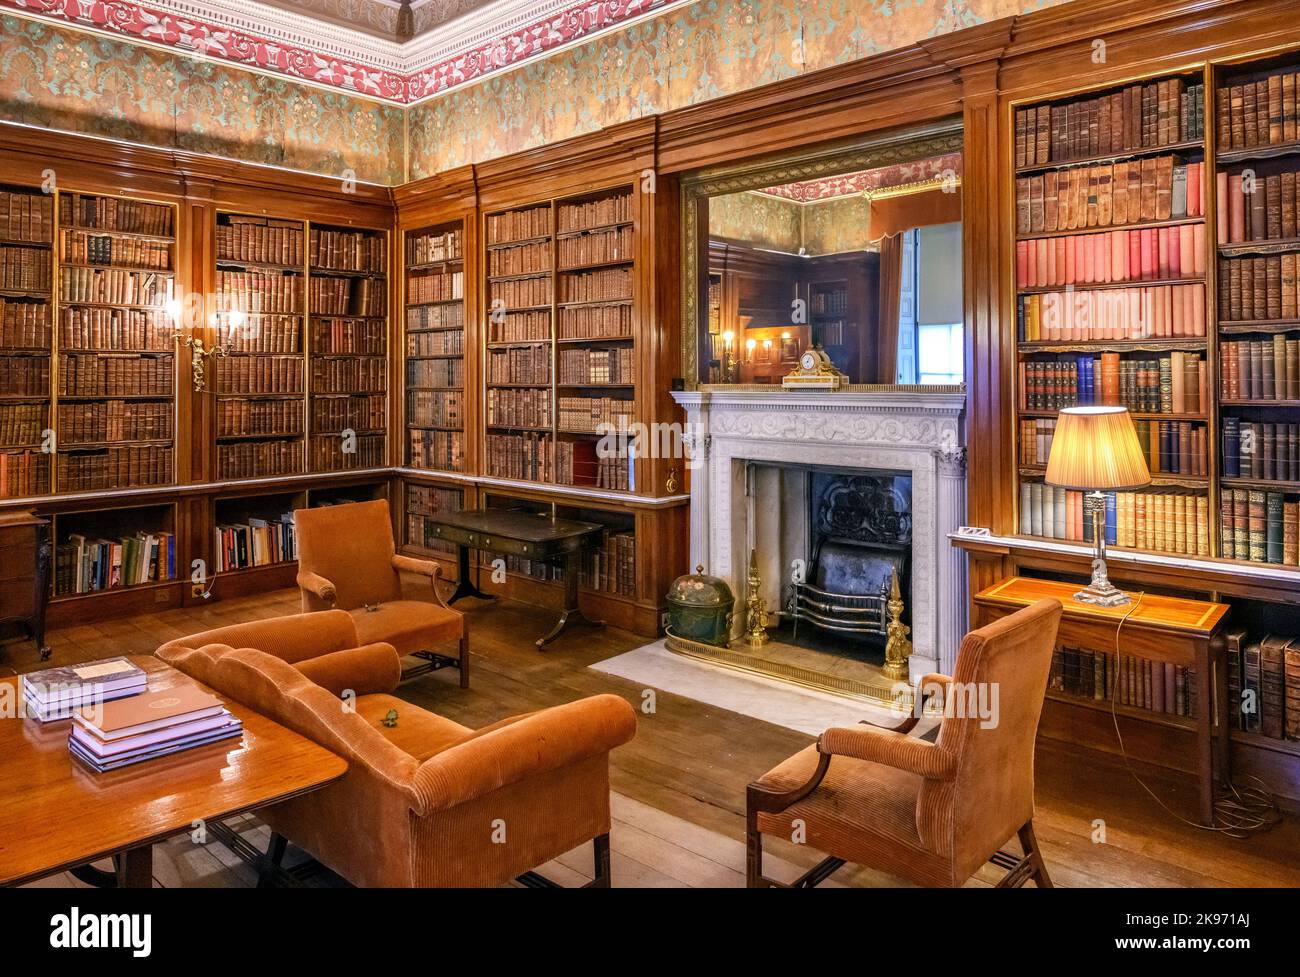 Bibliothèque espagnole à Harewood House, près de Leeds, West Yorkshire, Angleterre, Royaume-Uni Banque D'Images